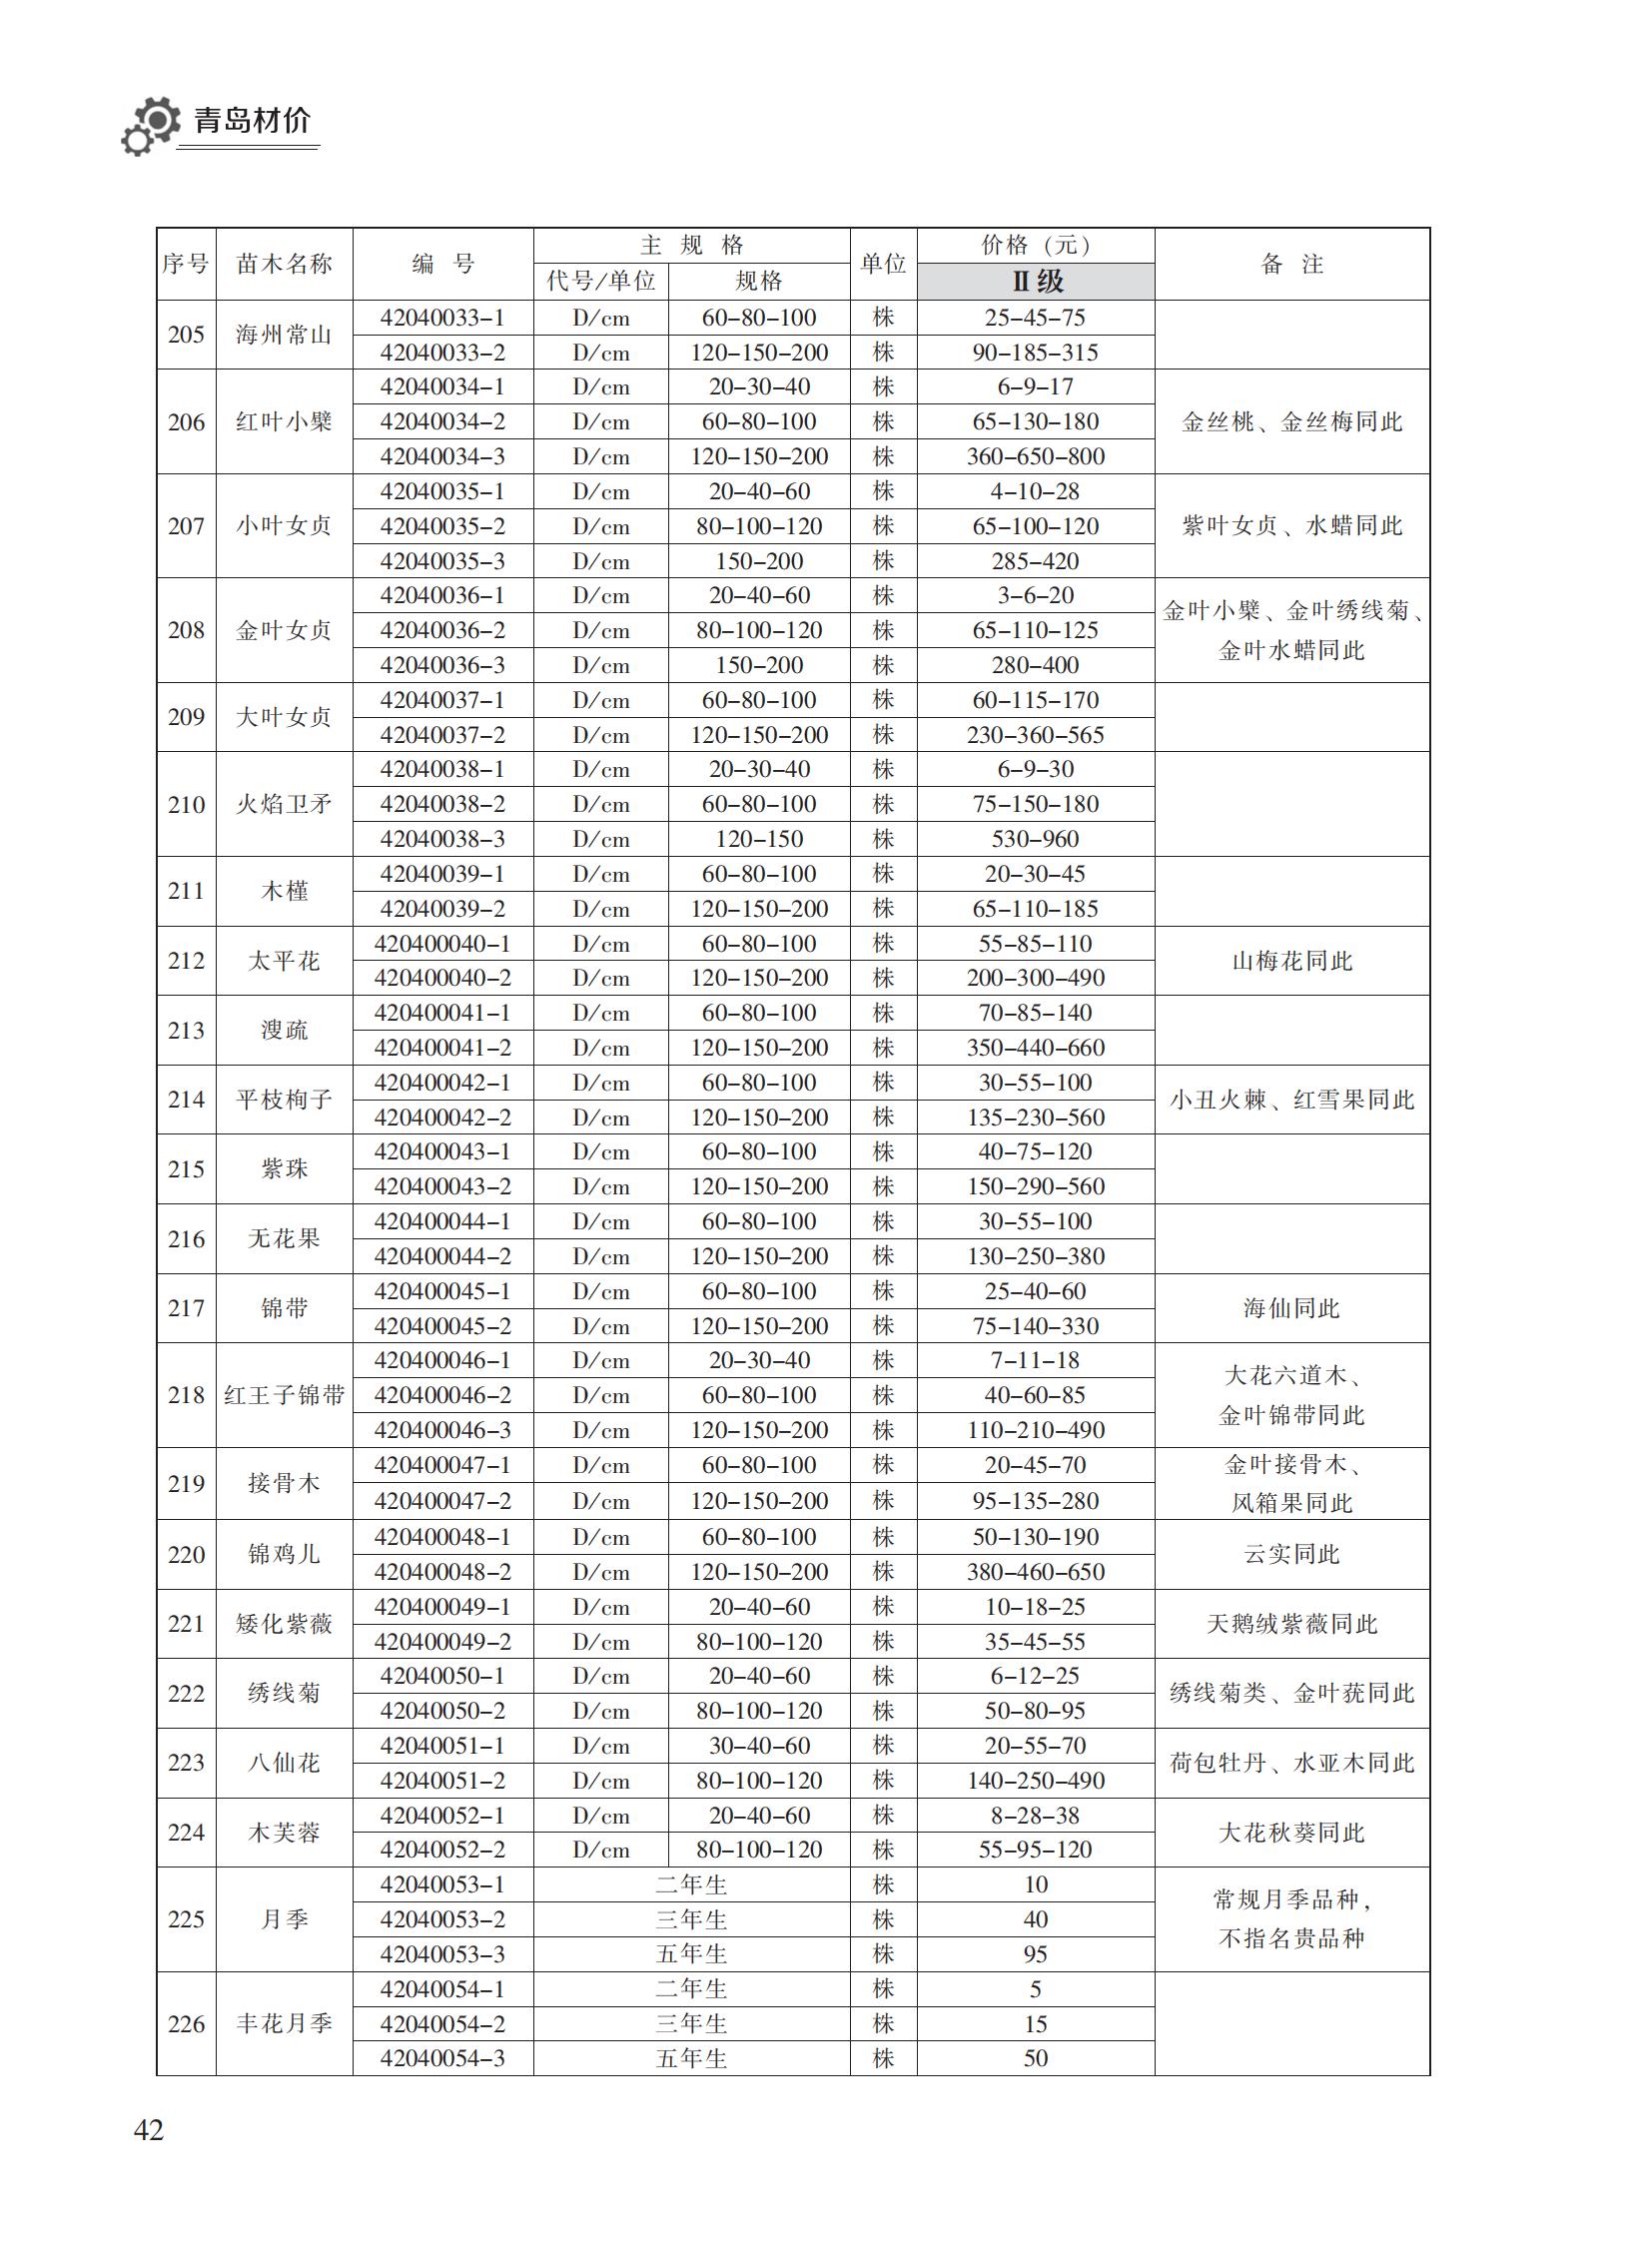 2023年11月青岛市建设工程材料价格及造价指数_41.jpg